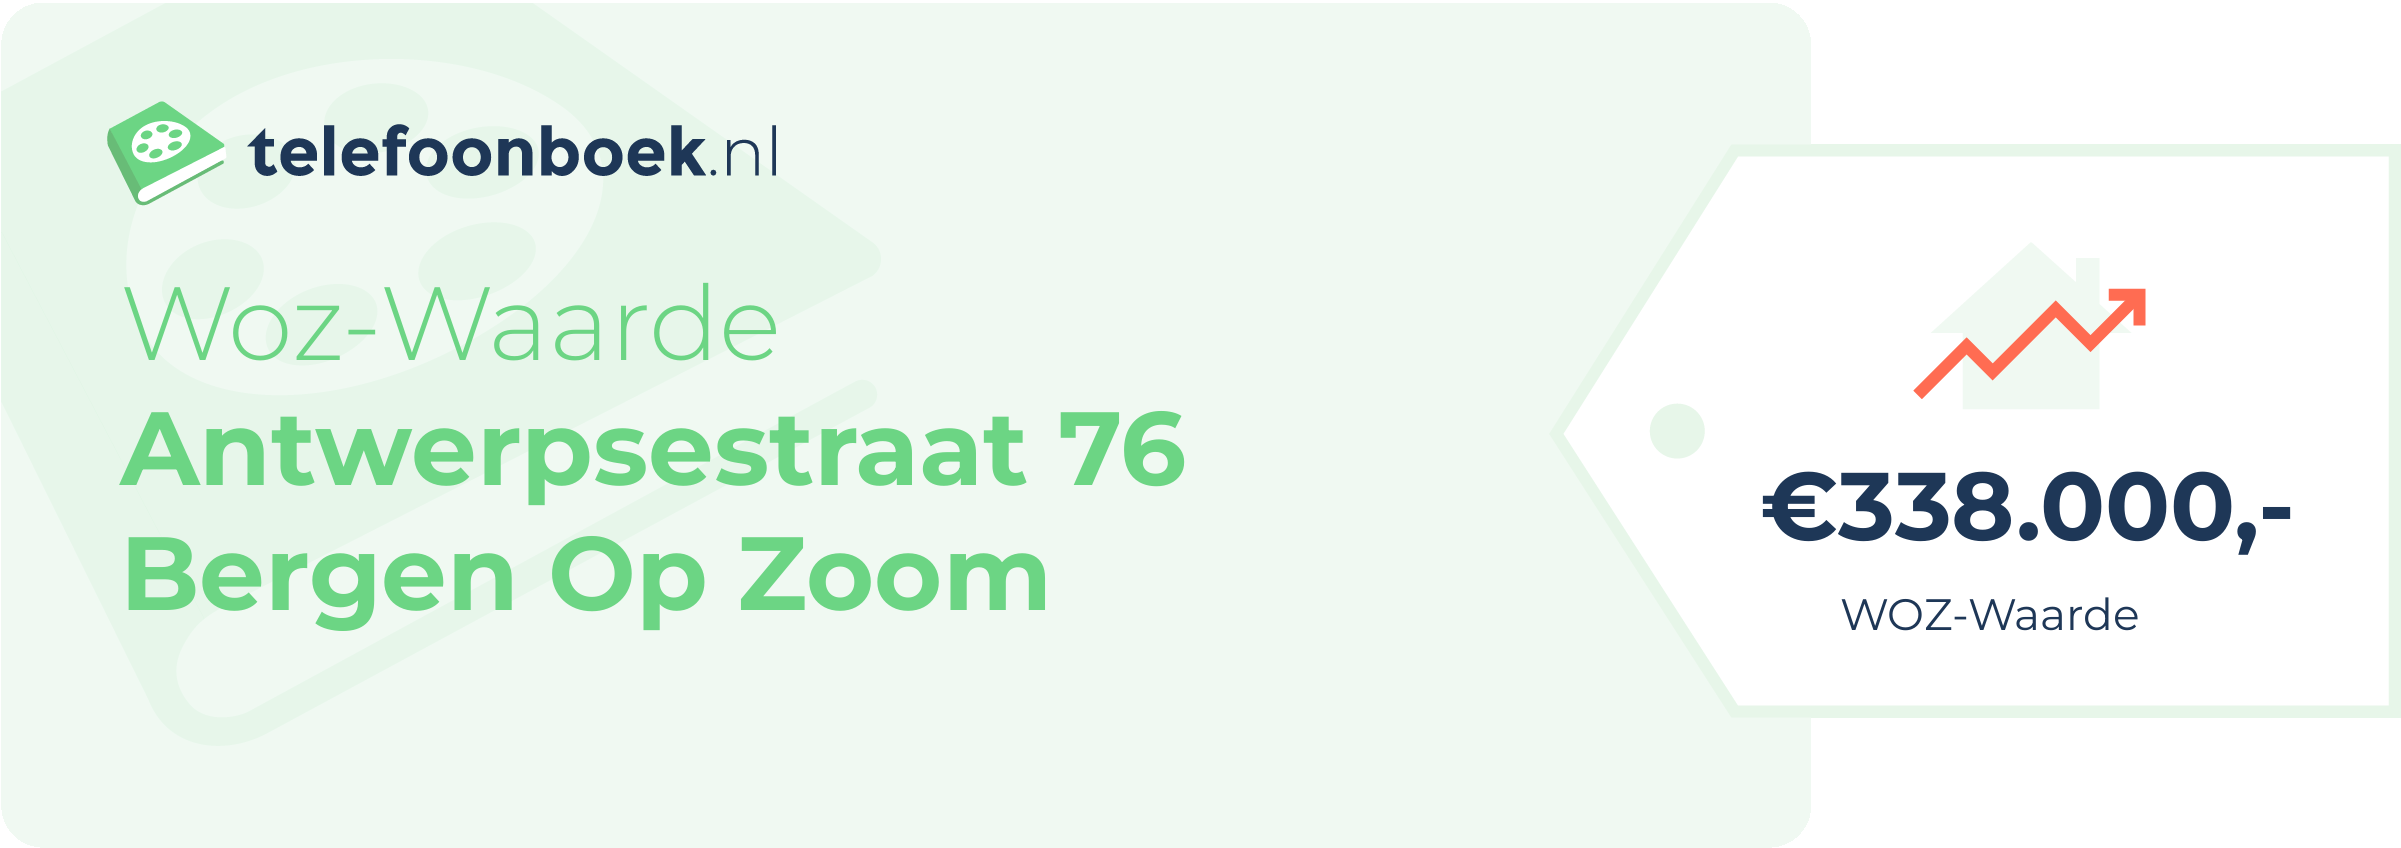 WOZ-waarde Antwerpsestraat 76 Bergen Op Zoom